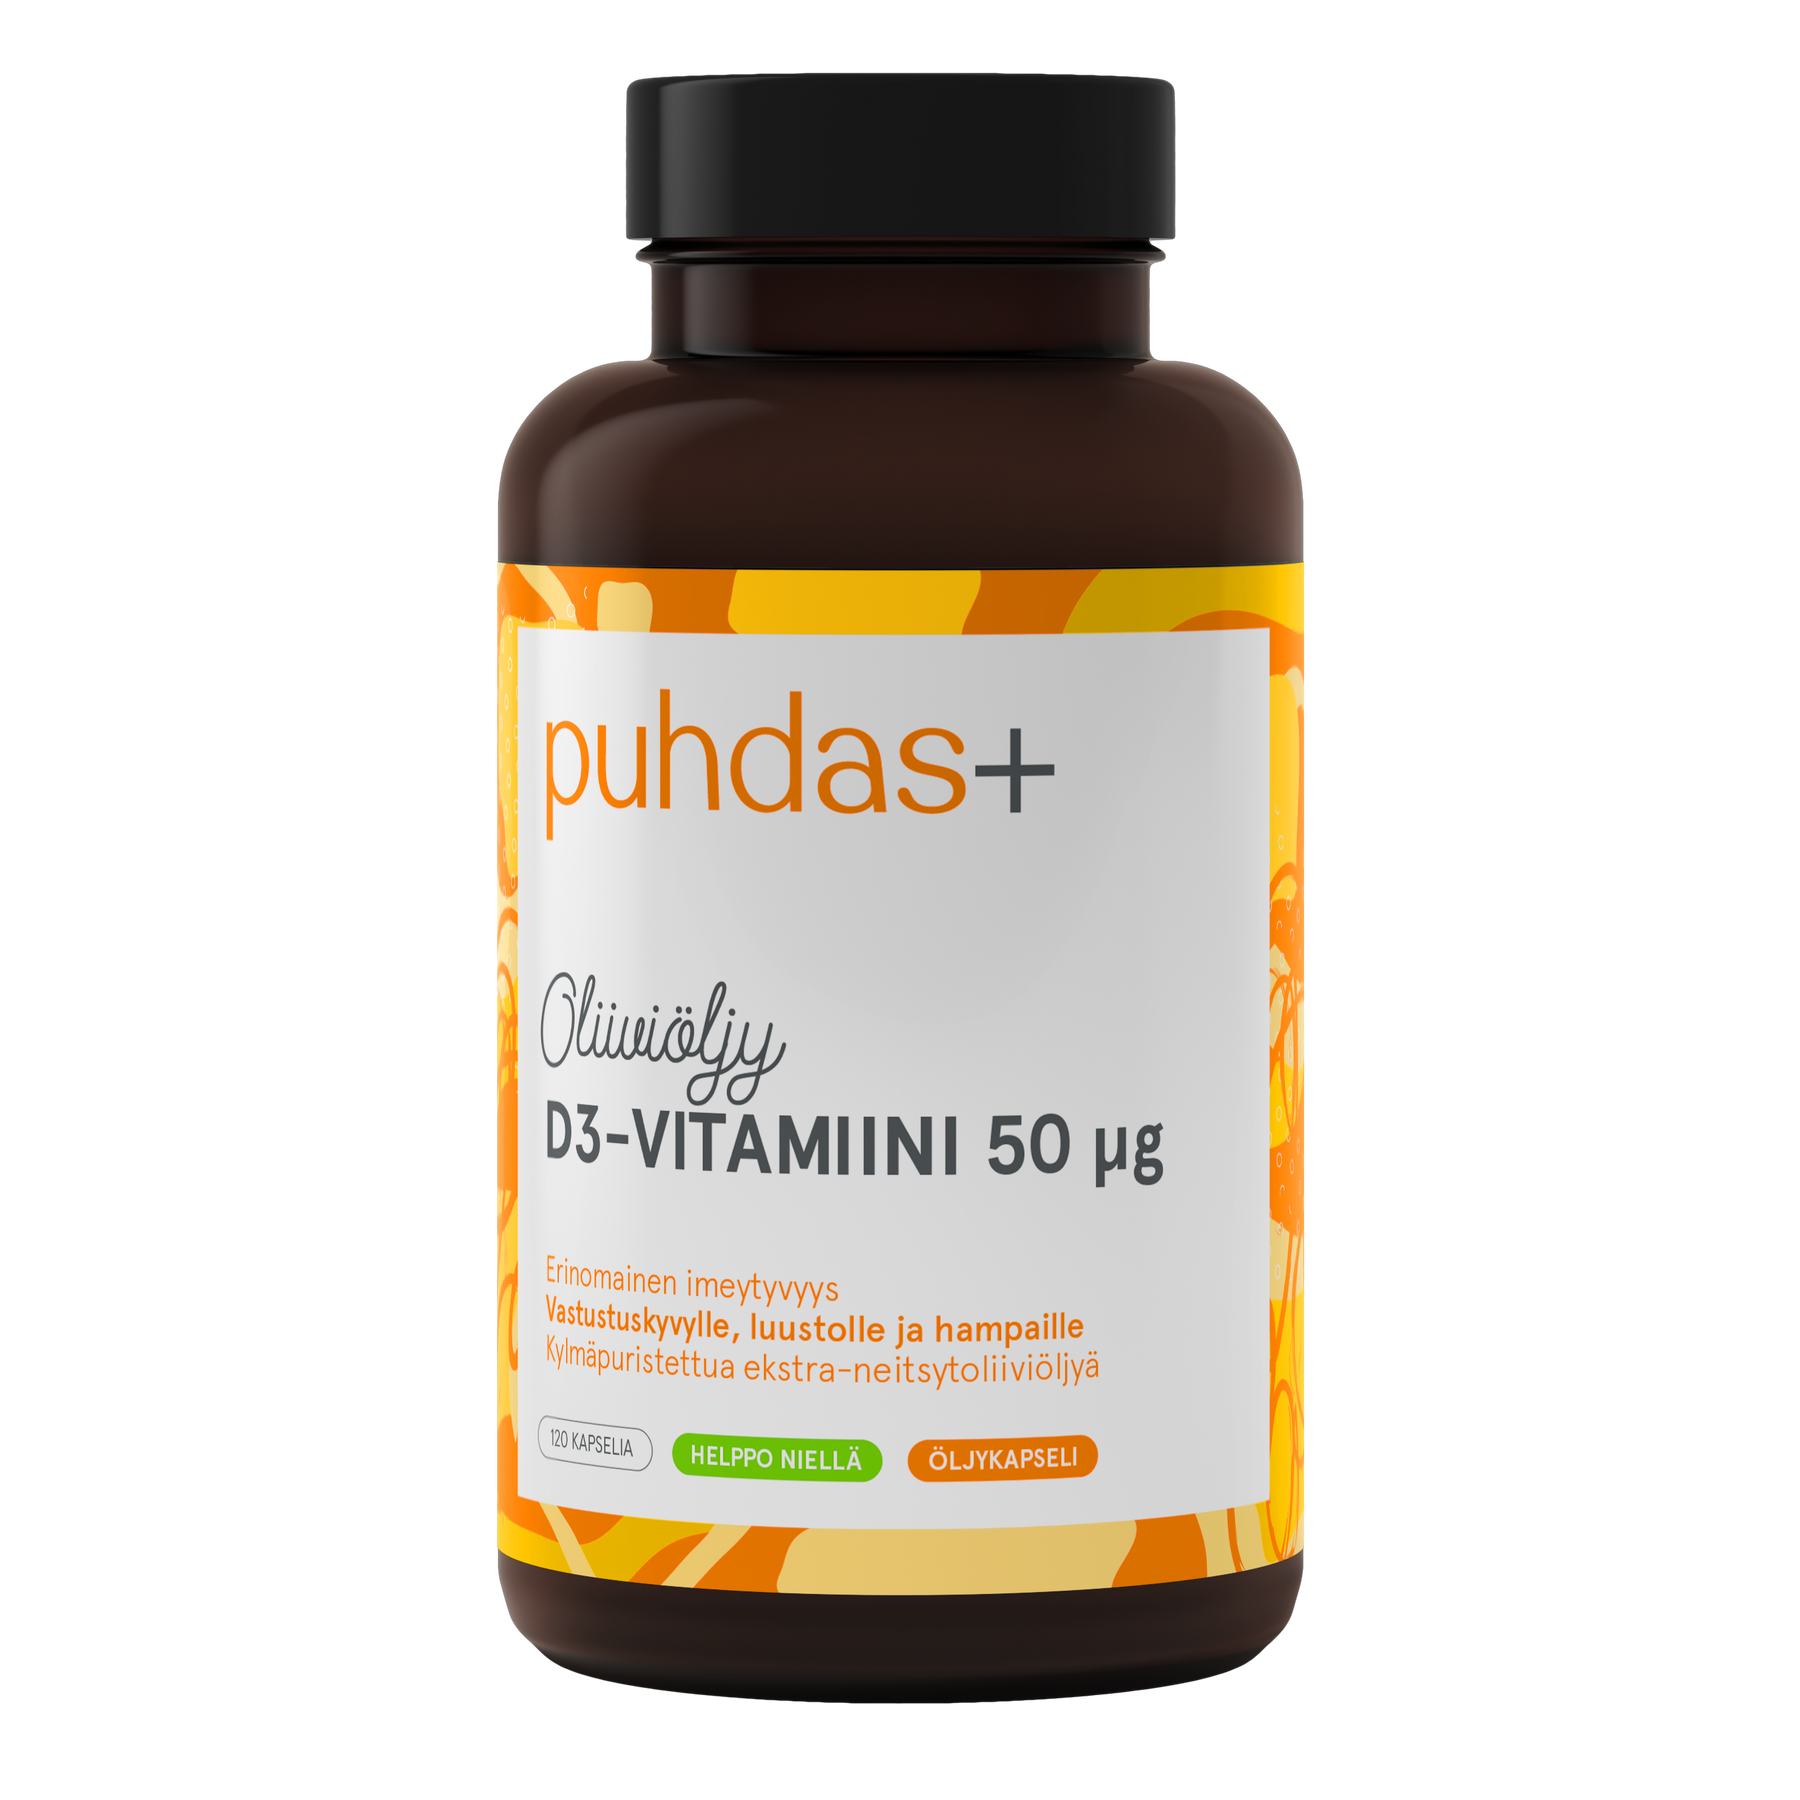 Puhdas+ D3-vitamiini Oliiviöljy 50 µg 120 kaps. - Päiväys 06/2024